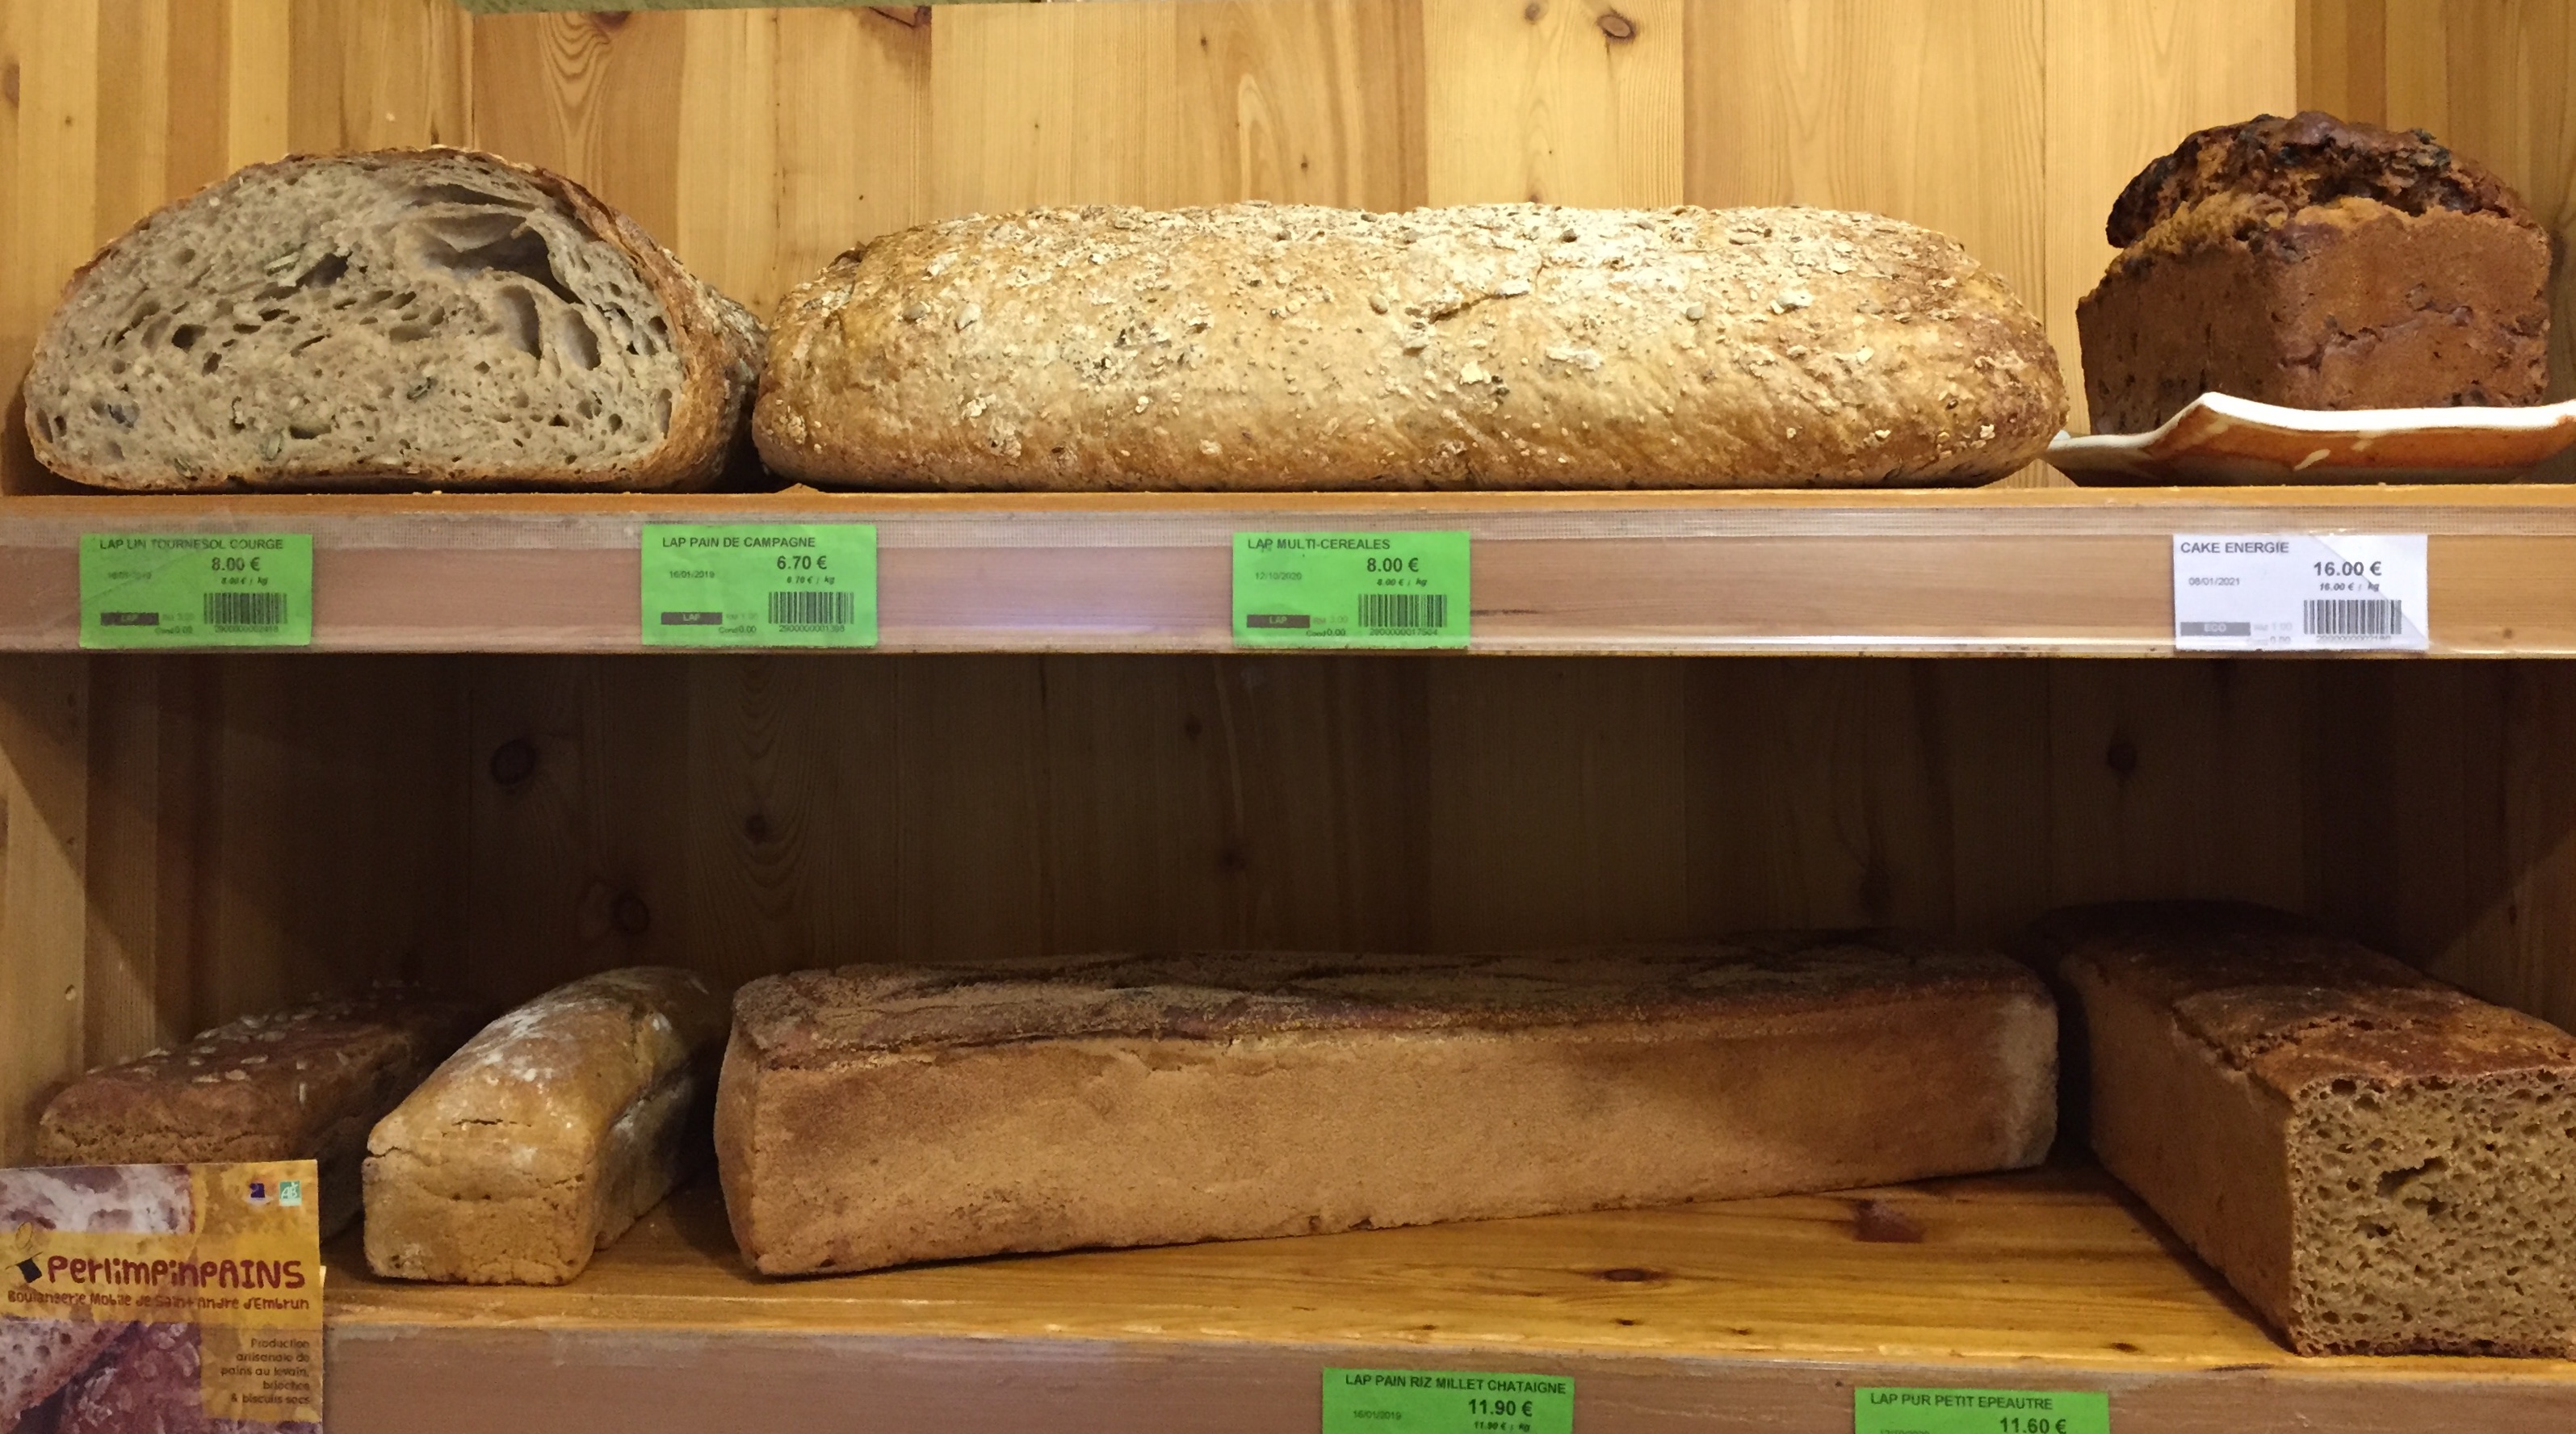 Nous travaillons avec 3 boulangers situés localement à Embrun, Montbrand et Sisteron.